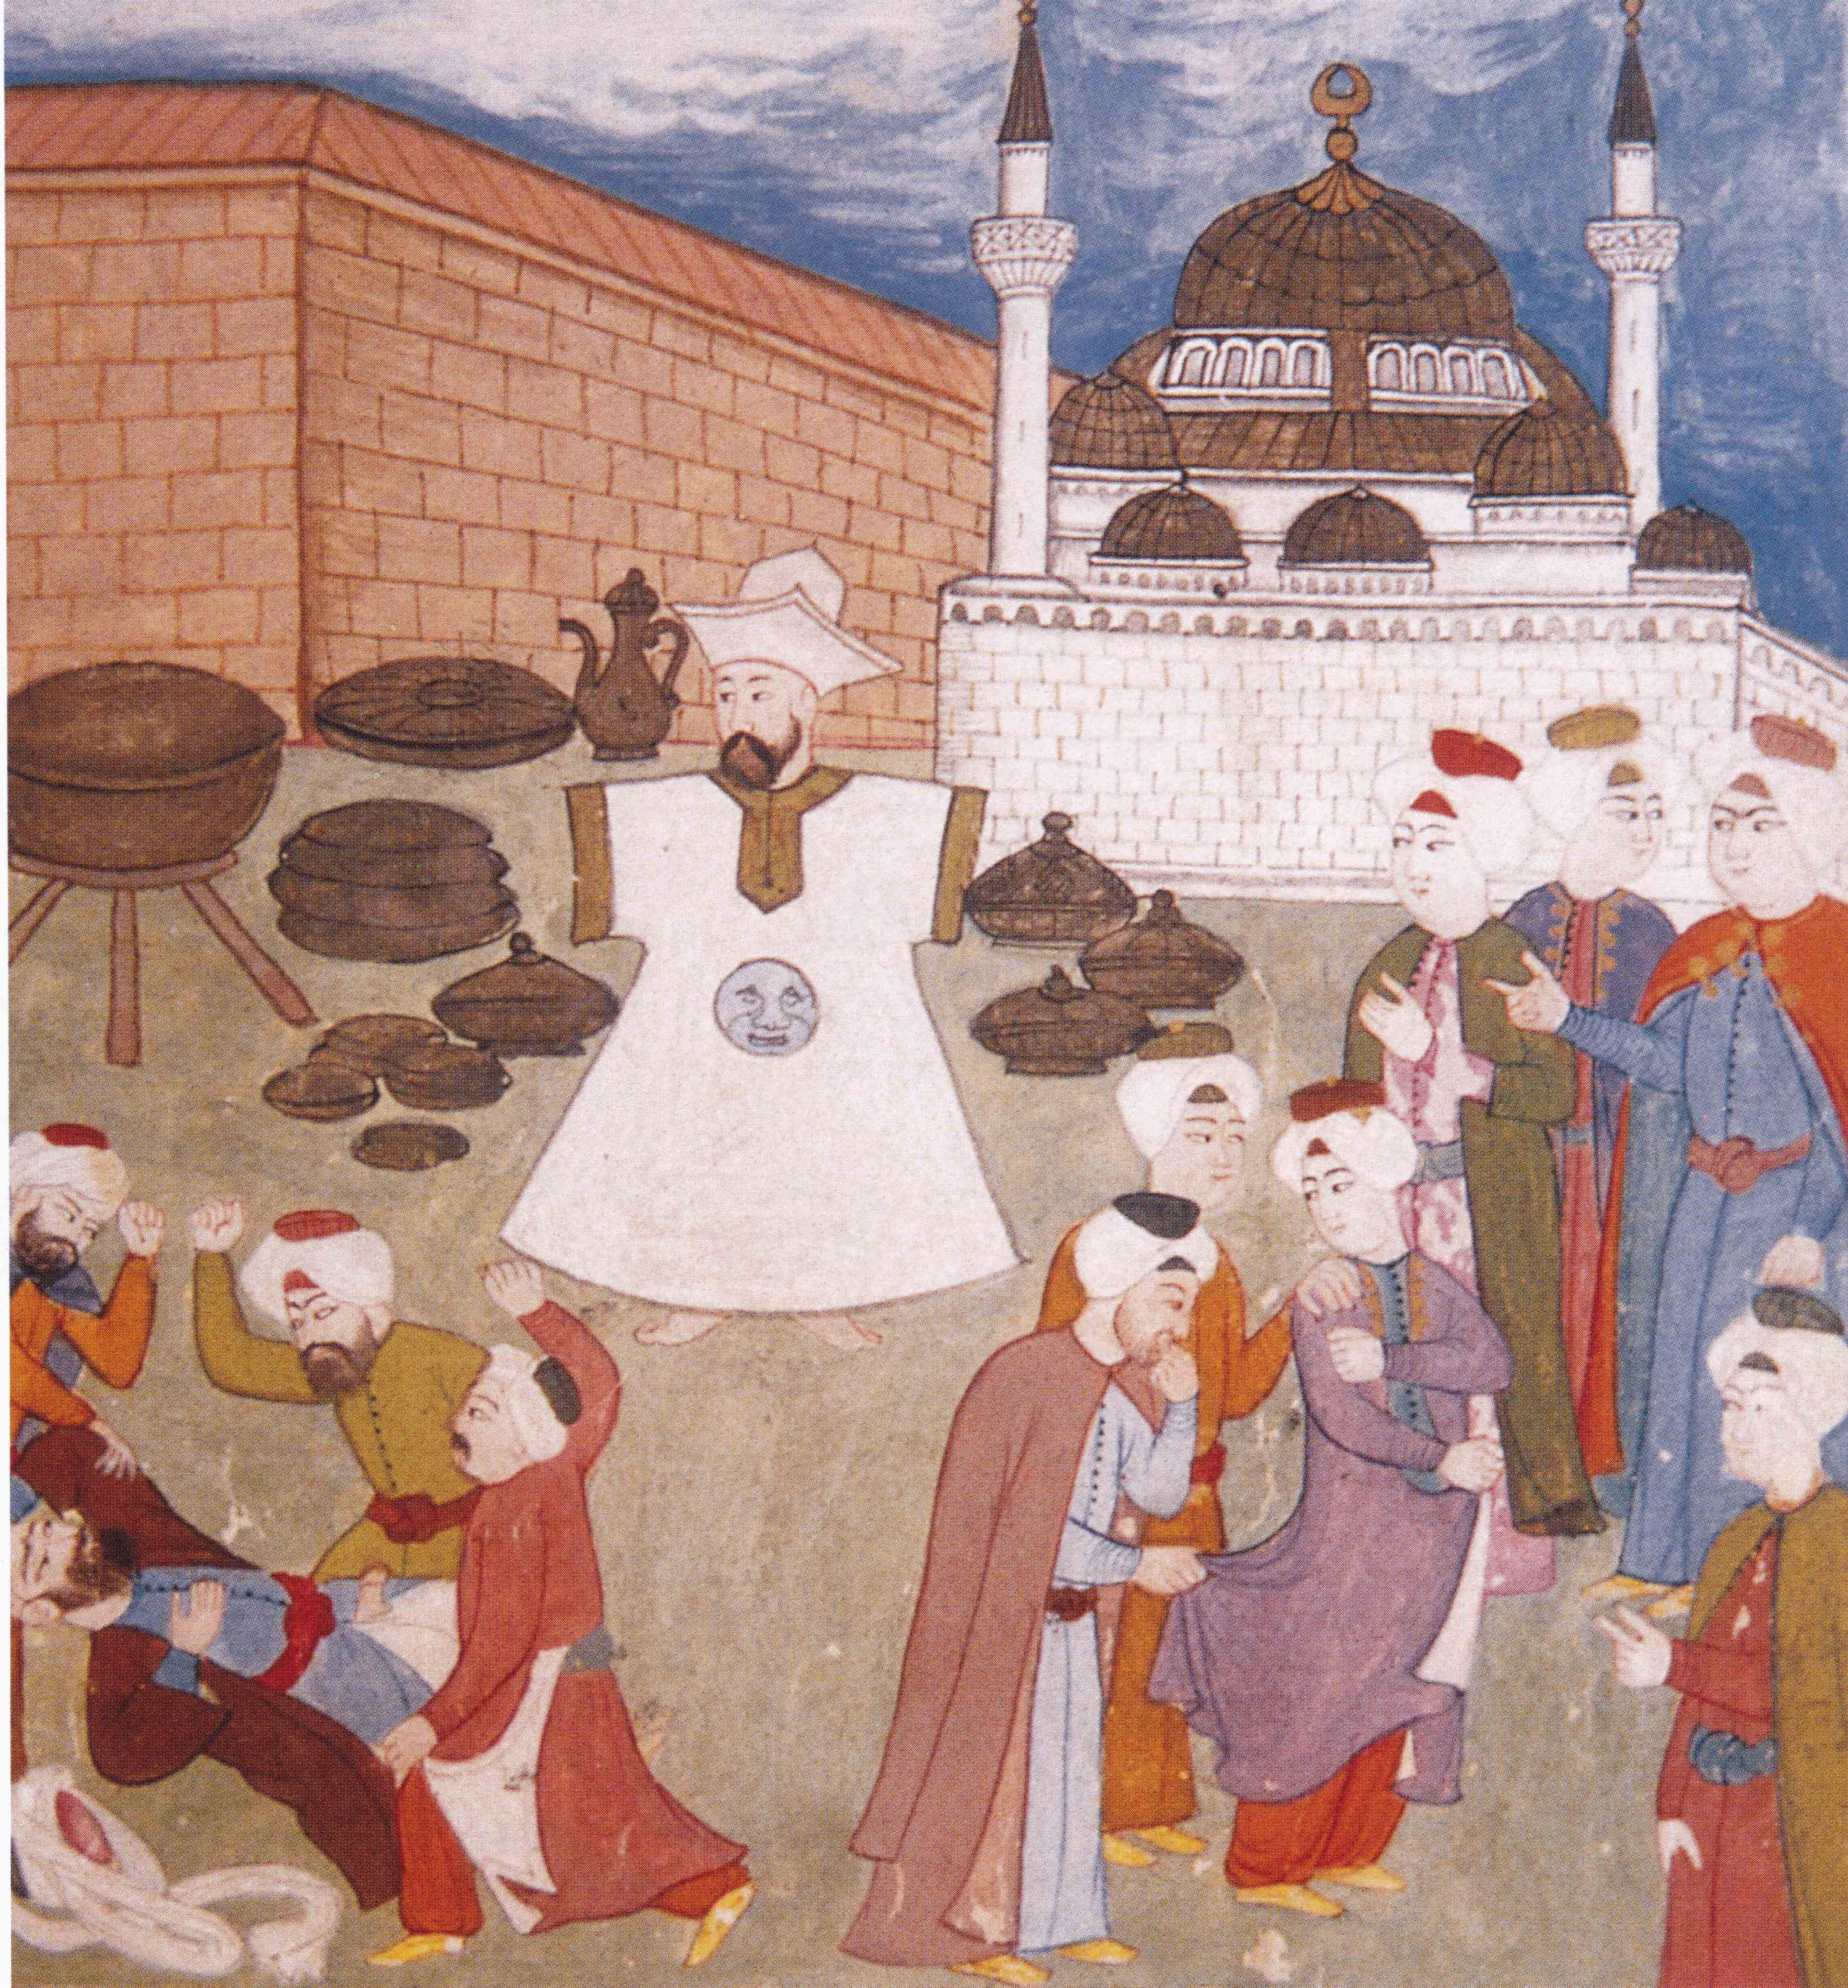 Ottoman miniature